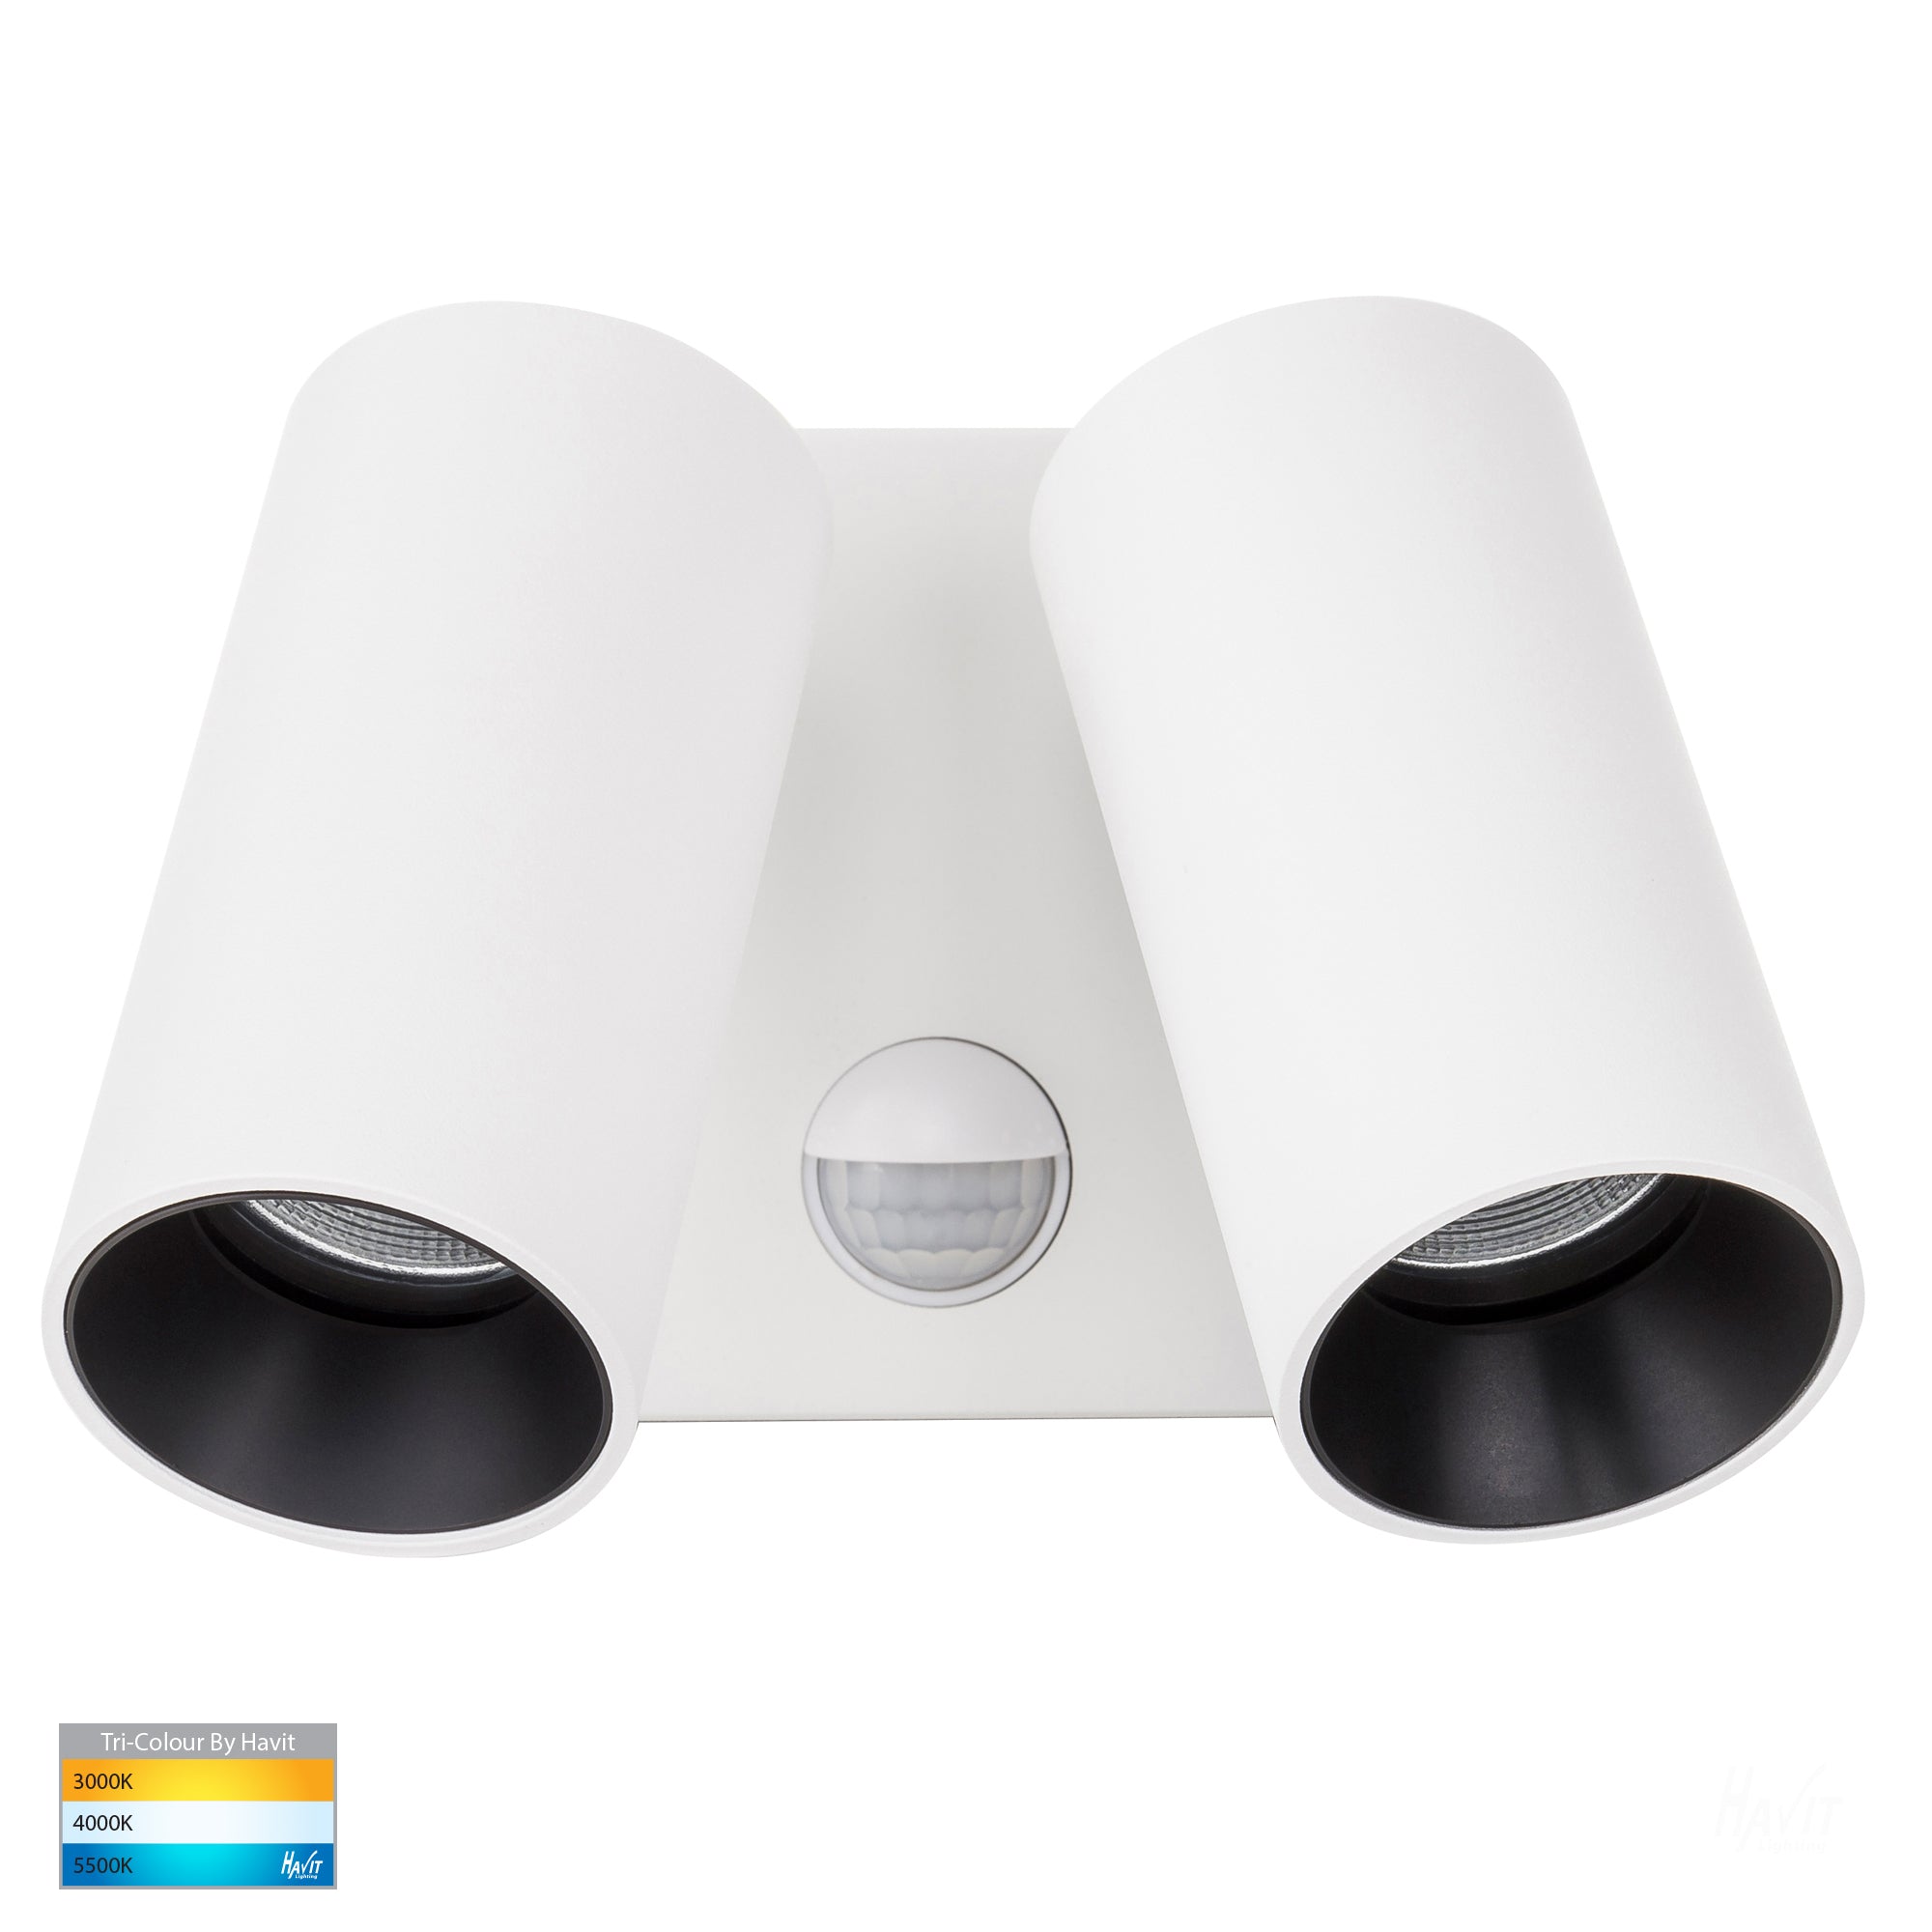 HV3684T-WHT - Revo White Double – Havit With Sensor Light Lighting Wall Adjustable